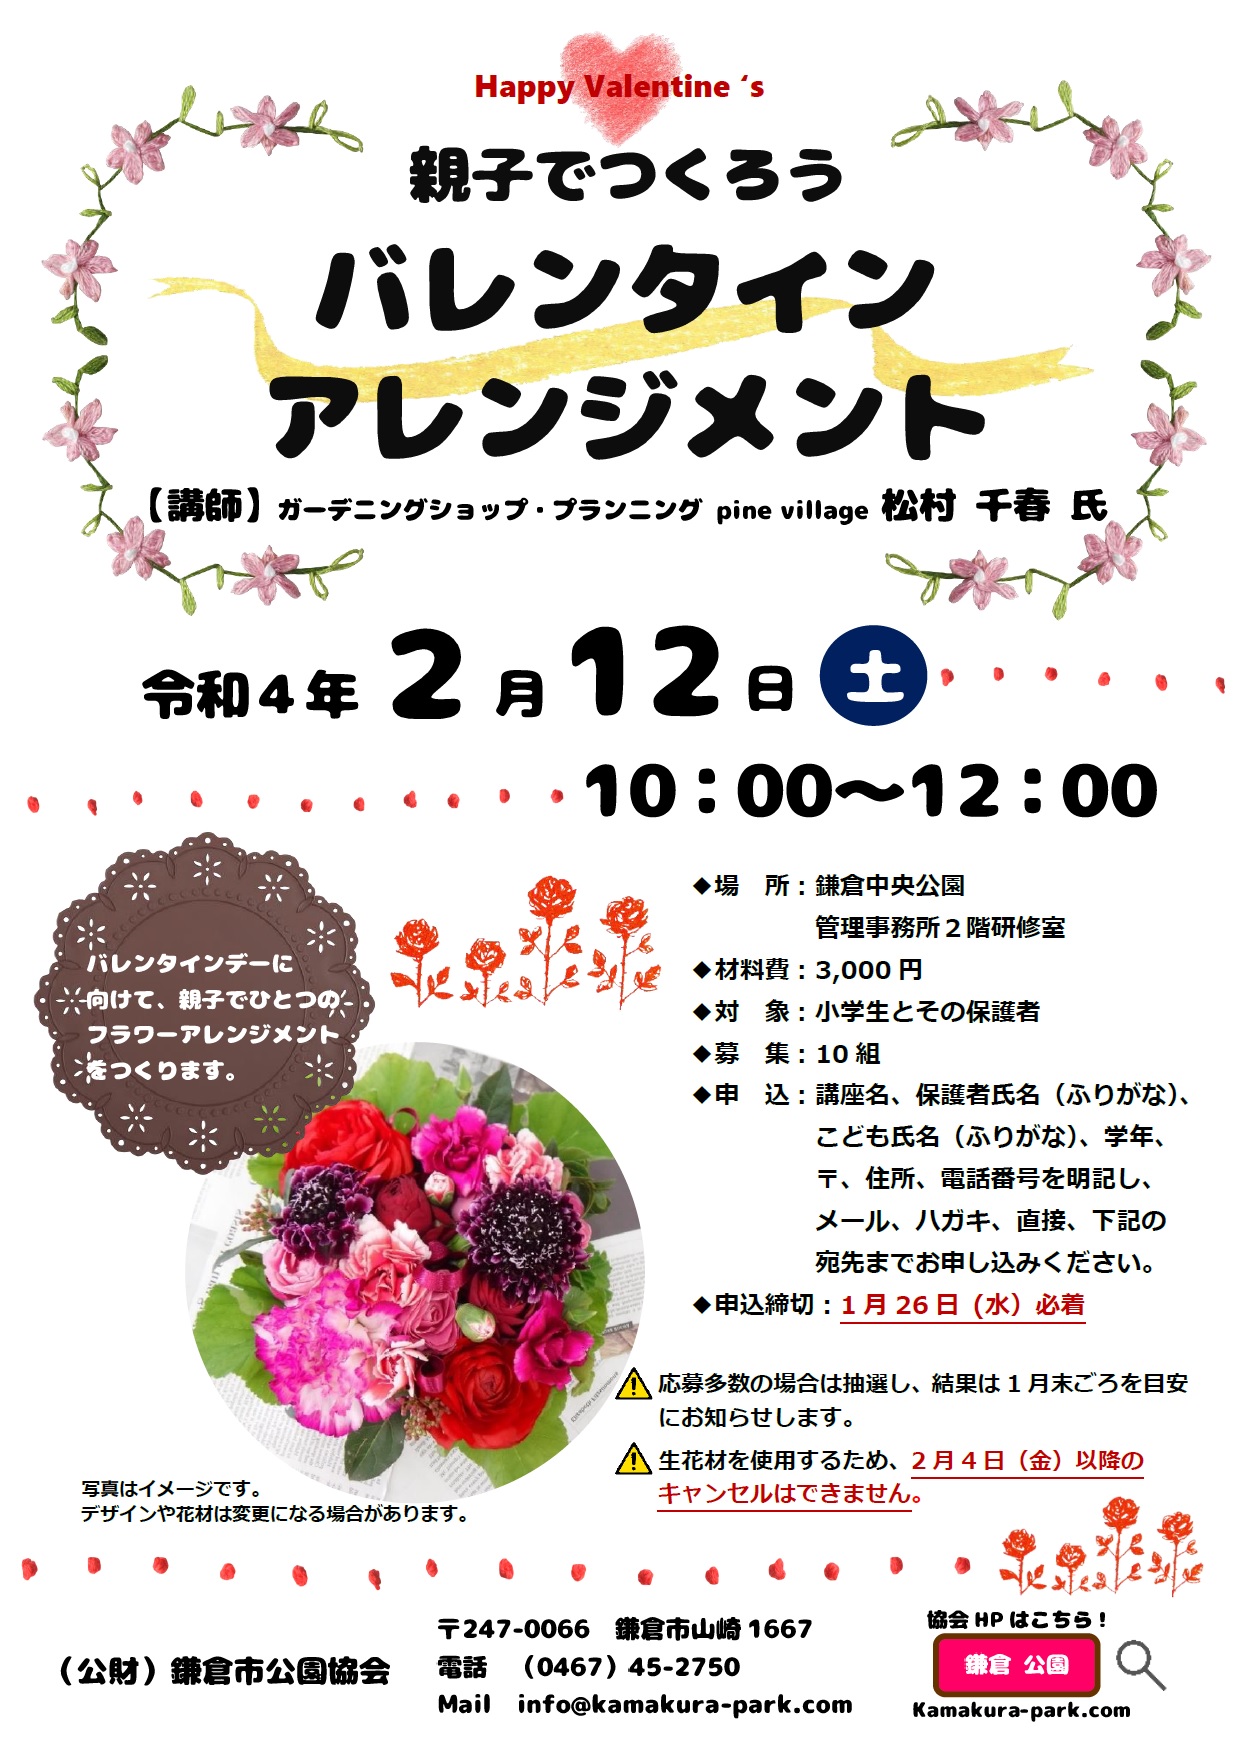 鎌倉市公園協会 親子でつくるバレンタインのアレンジメント教室を開催します 詳しくはちらし 協会hp T Co Gzxqvkzab2をご覧ください チョコと一緒にお花の贈り物もどうでしょう 鎌倉中央公園 バレンタイン アレンジメント T Co